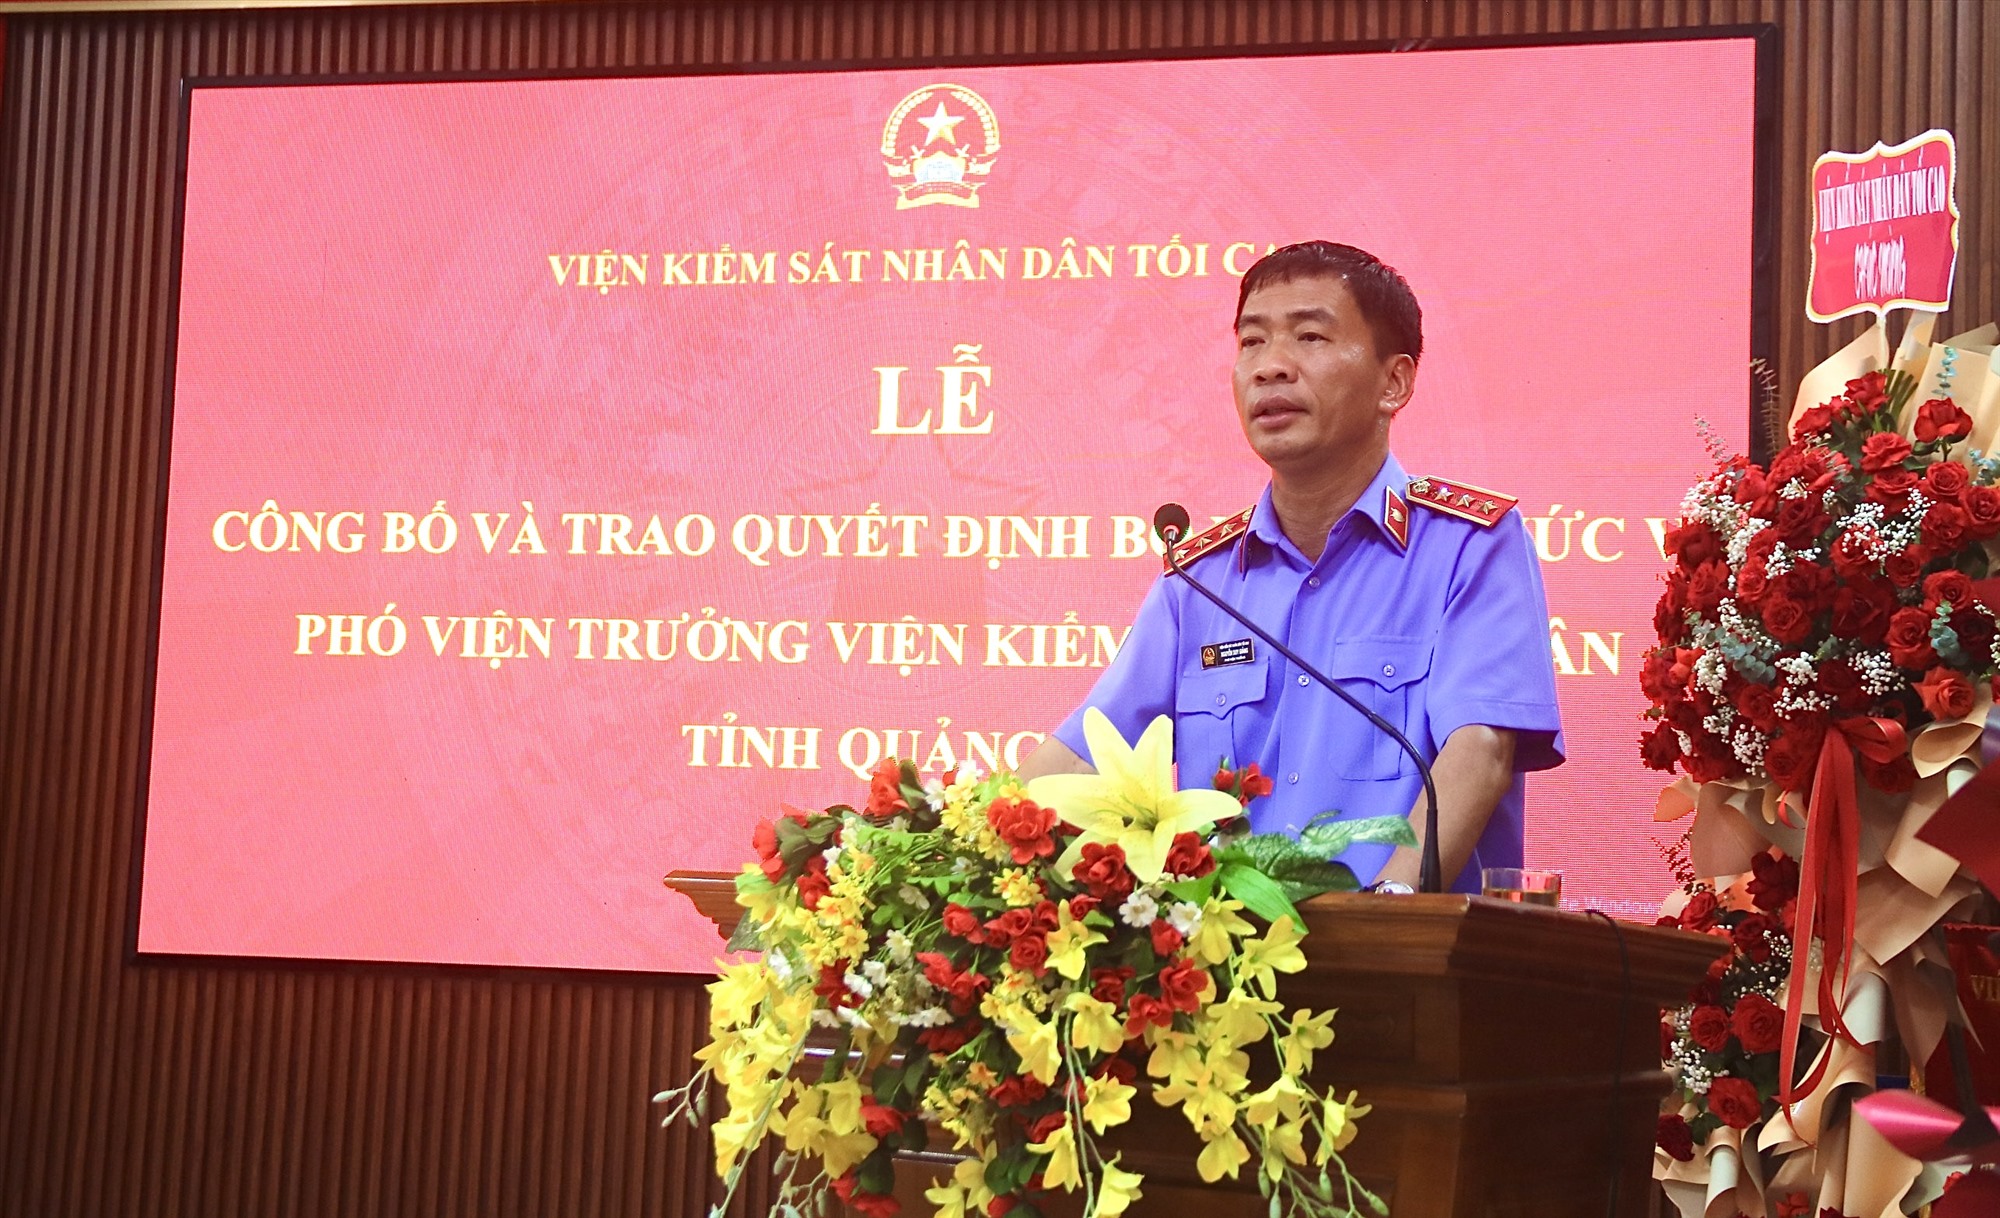 Phó Viện trưởng Viện KSND tối cao Nguyễn Duy Giảng trao quyết định bổ nhiệm cho ông Nguyễn Trường và bà Thái Thị Phương Lan - Ảnh: N.B